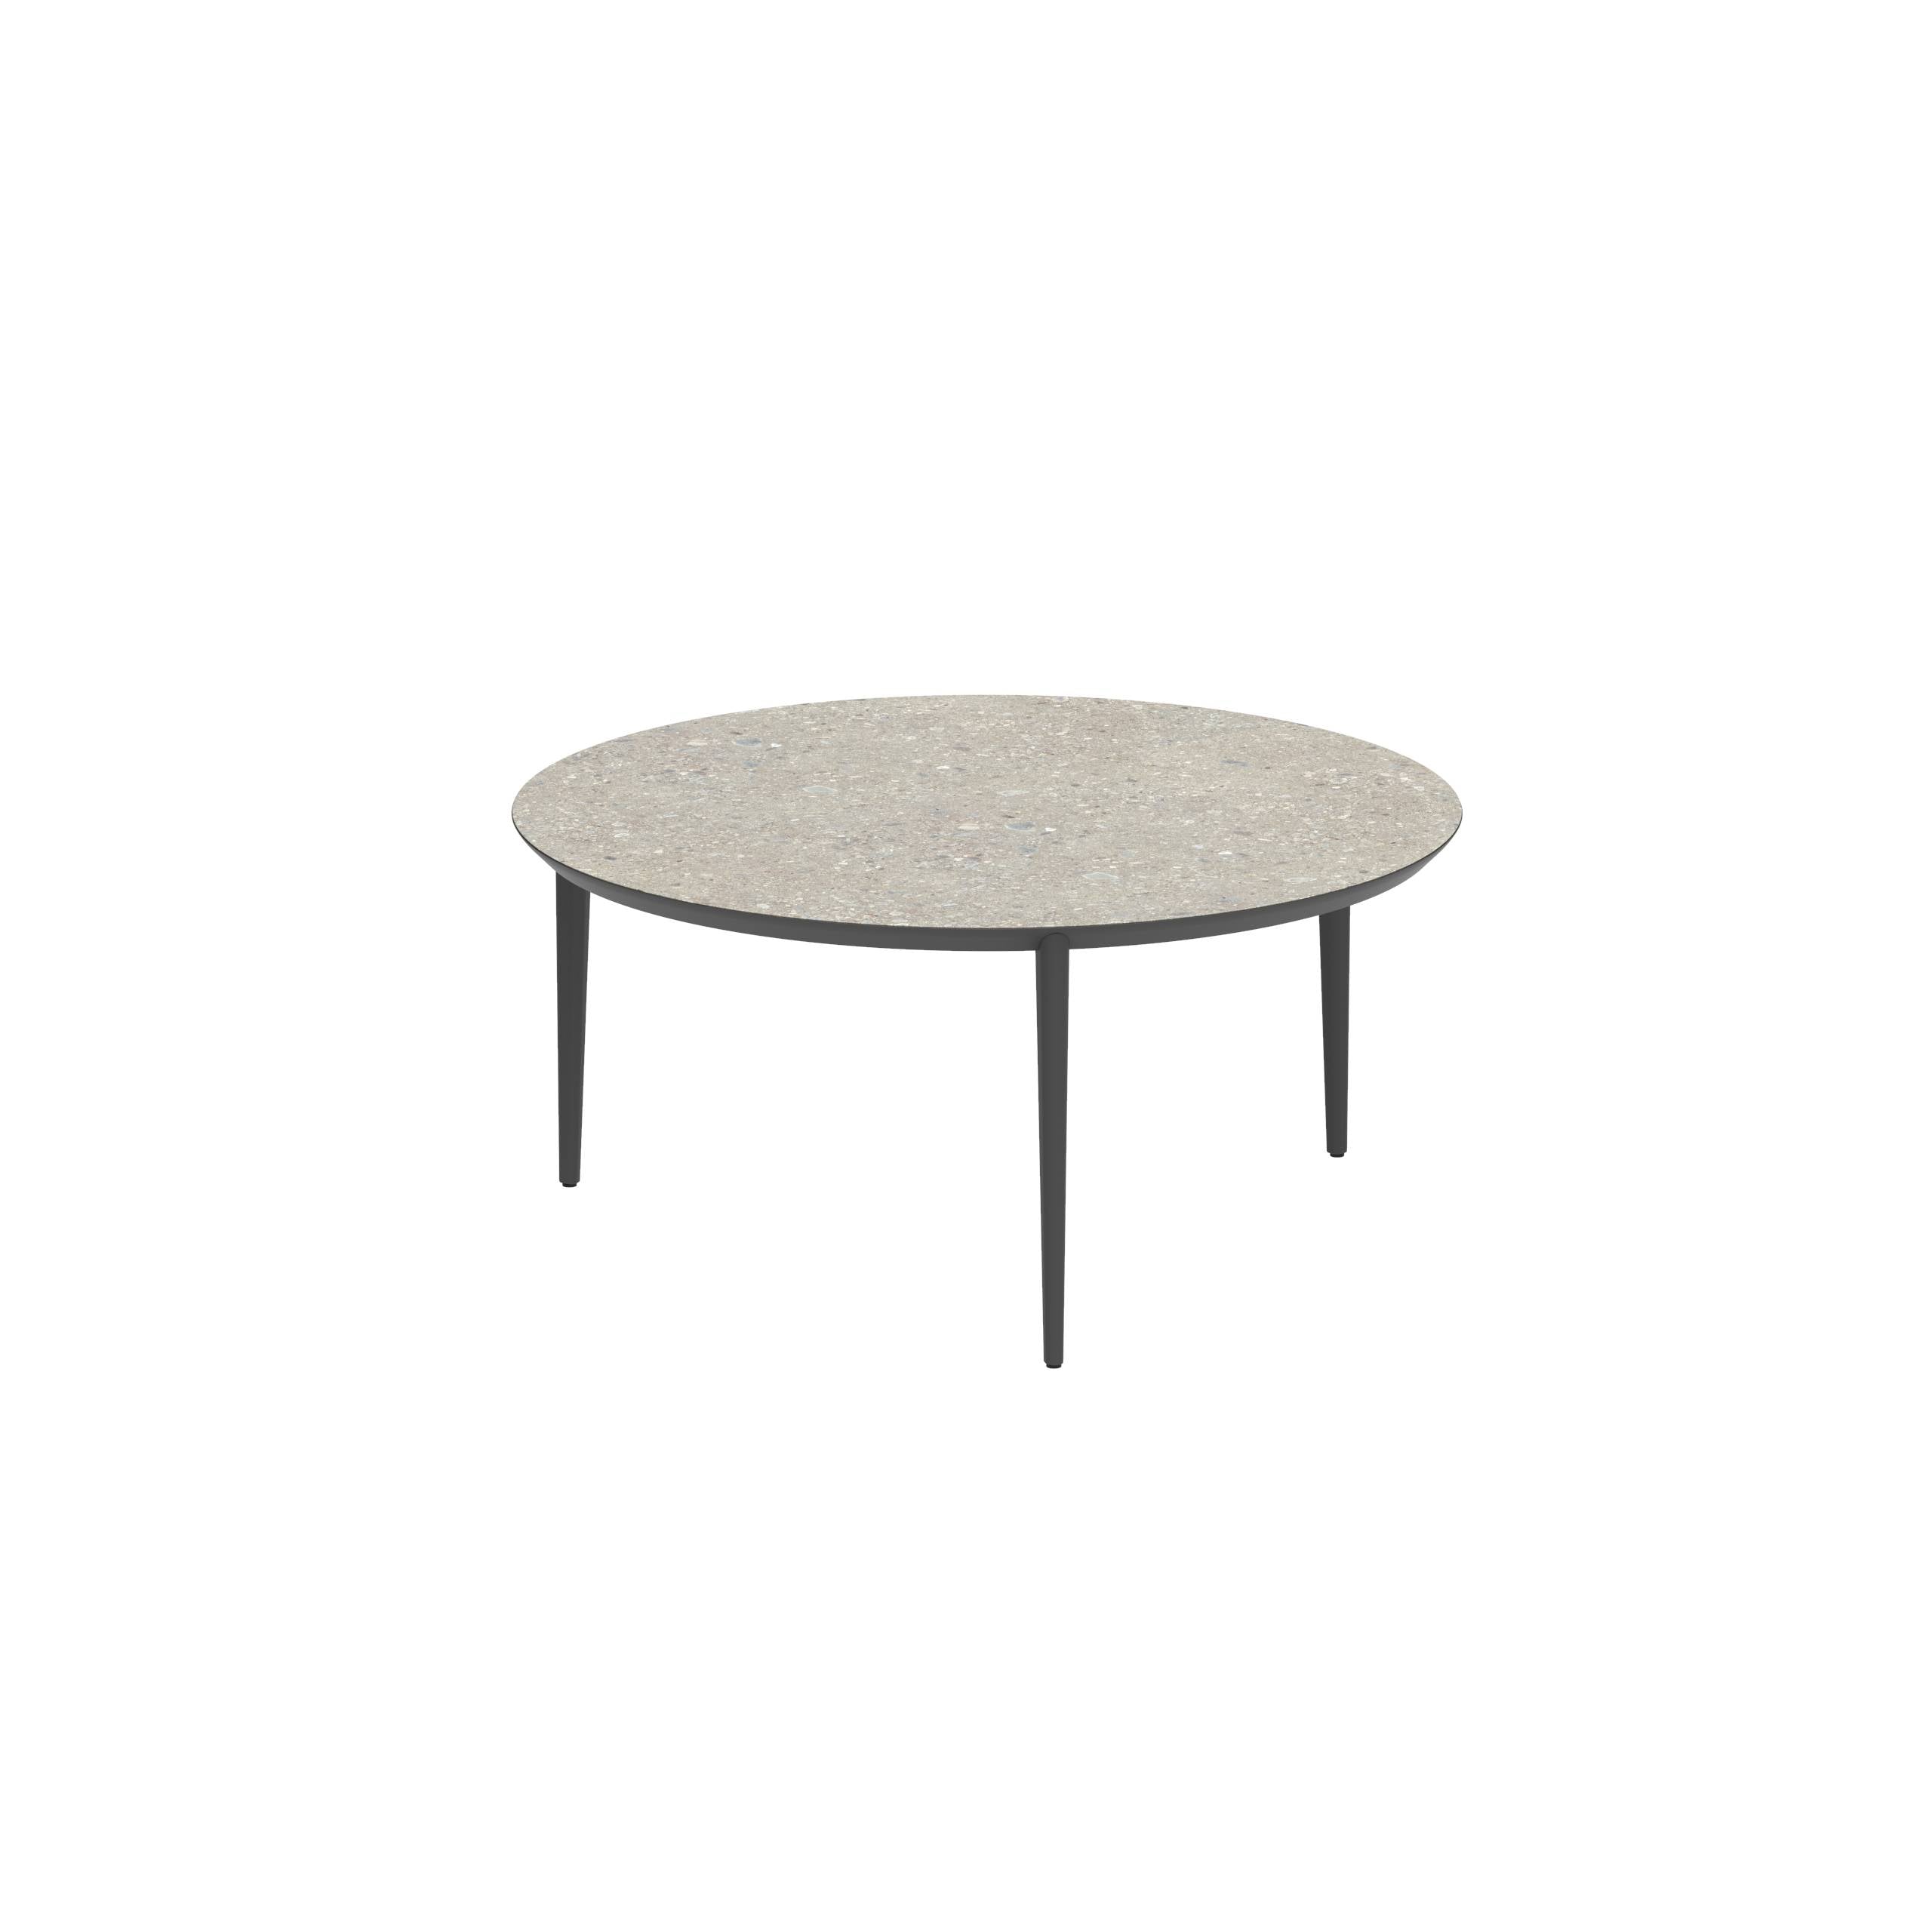 U-Nite Table Round Ø 160cm Alu Legs Anthracite - Table Top Ceramic Ceppo Dolomitica